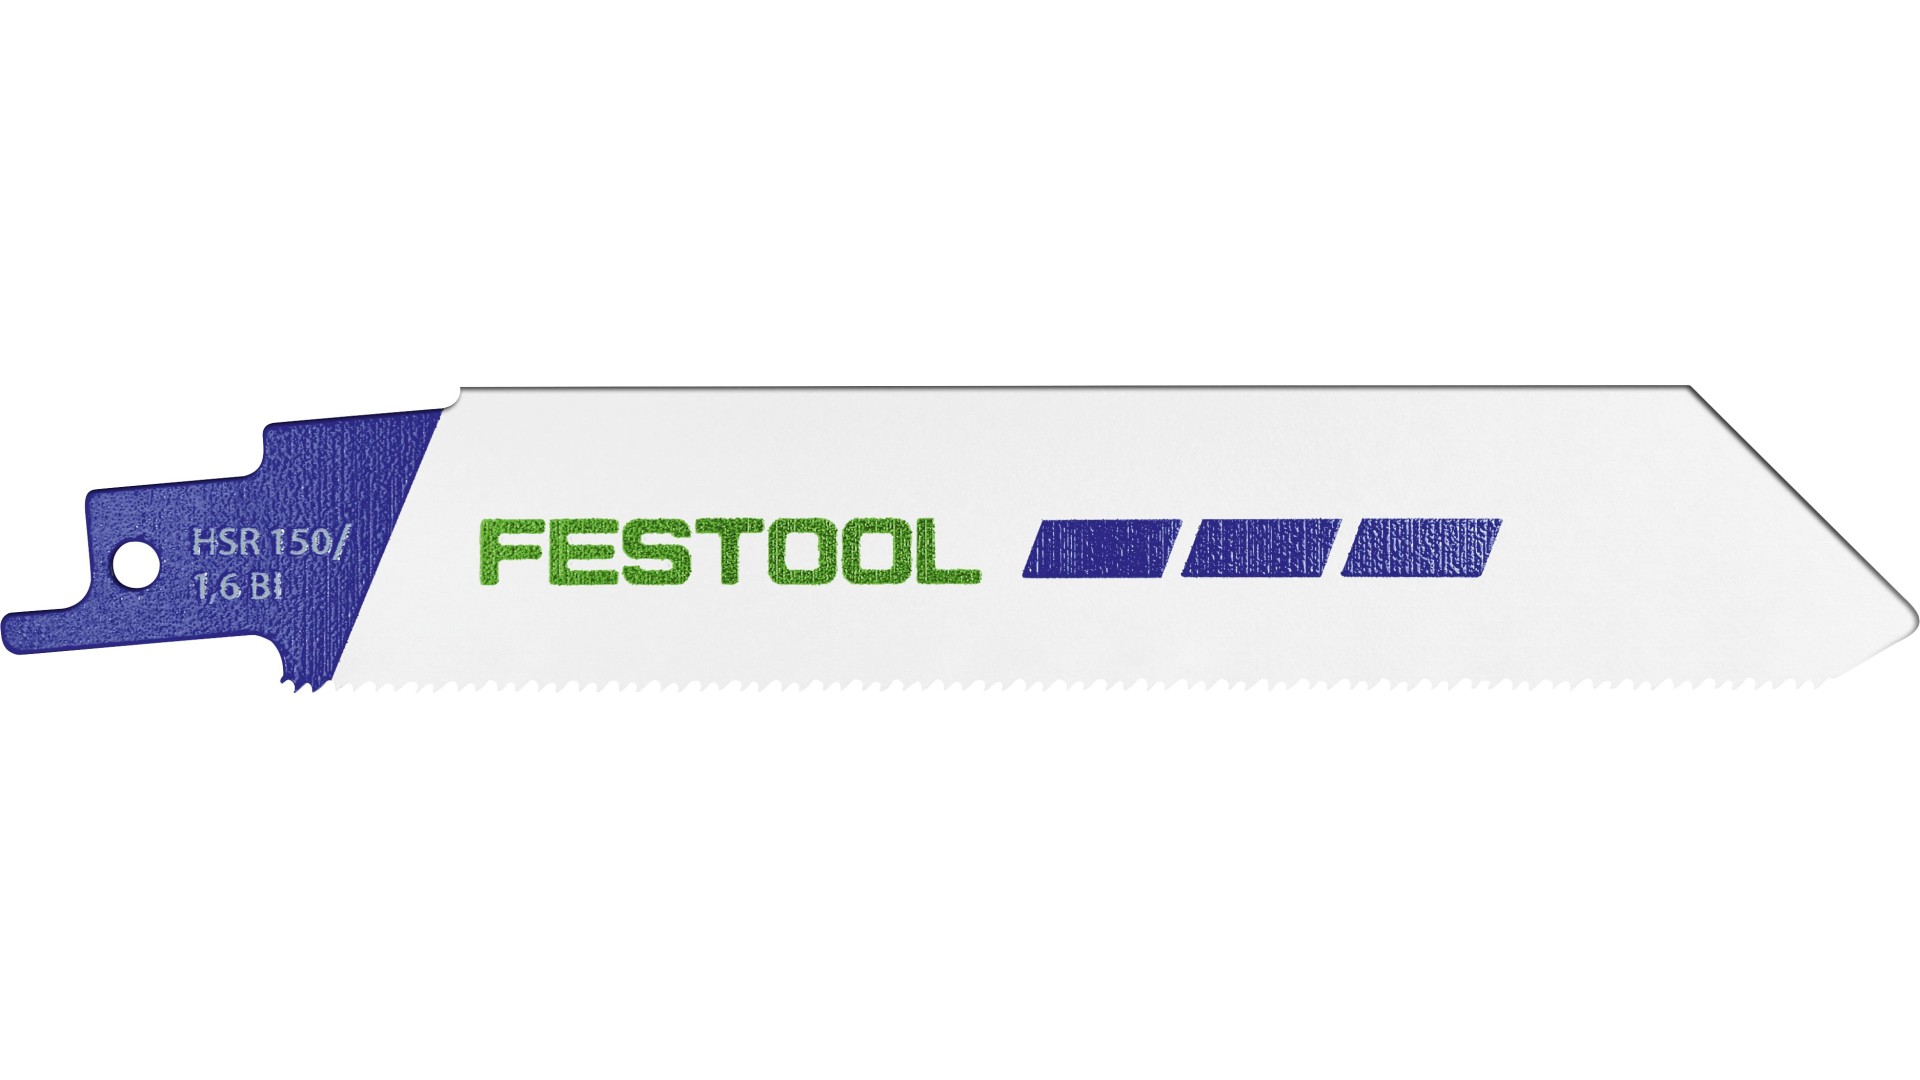 Пильное полотно Festool HSR 150/1,6 BI/5 METAL STEEL/STAINLESS STEEL пильное полотно festool dhmr 230 3 4 demolition 577494